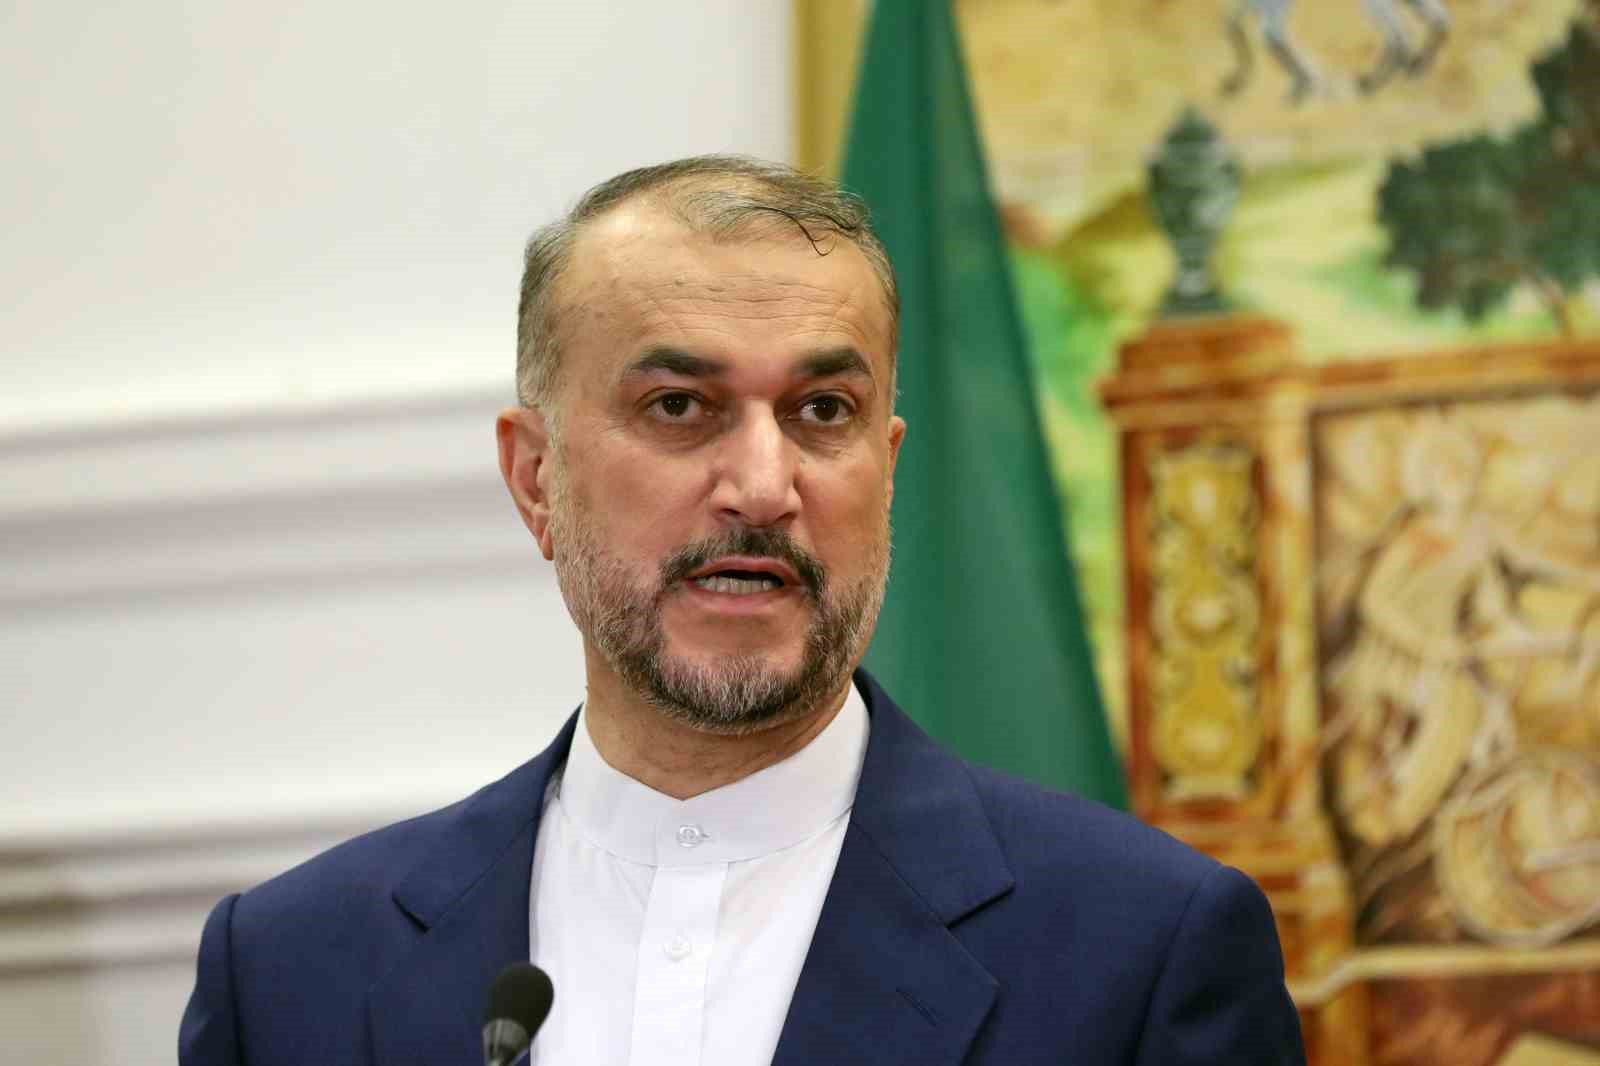 İran Dışişleri Bakanı Abdullahiyan: “Meşru müdafaa hakkımızı kullandık ve saldırımız sona erdi”